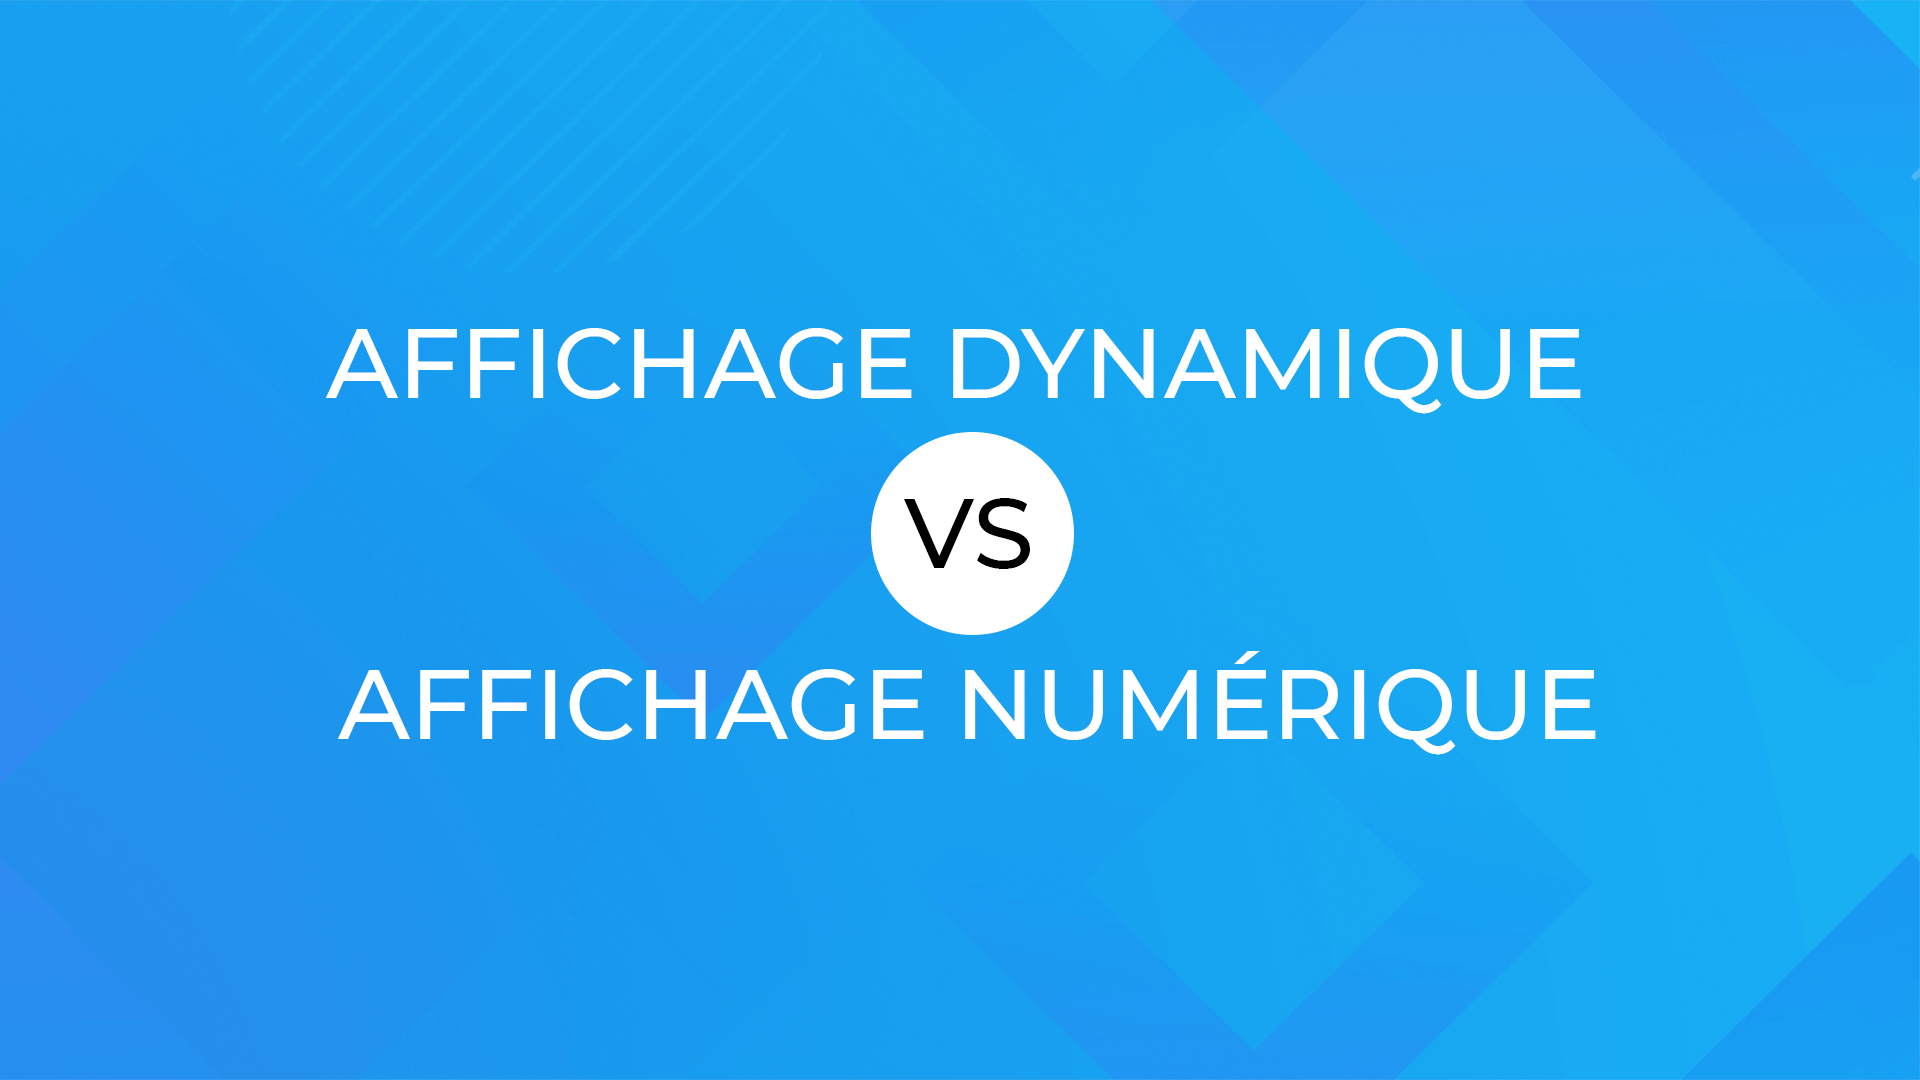 Affichage dynamique vs Affichage numérique